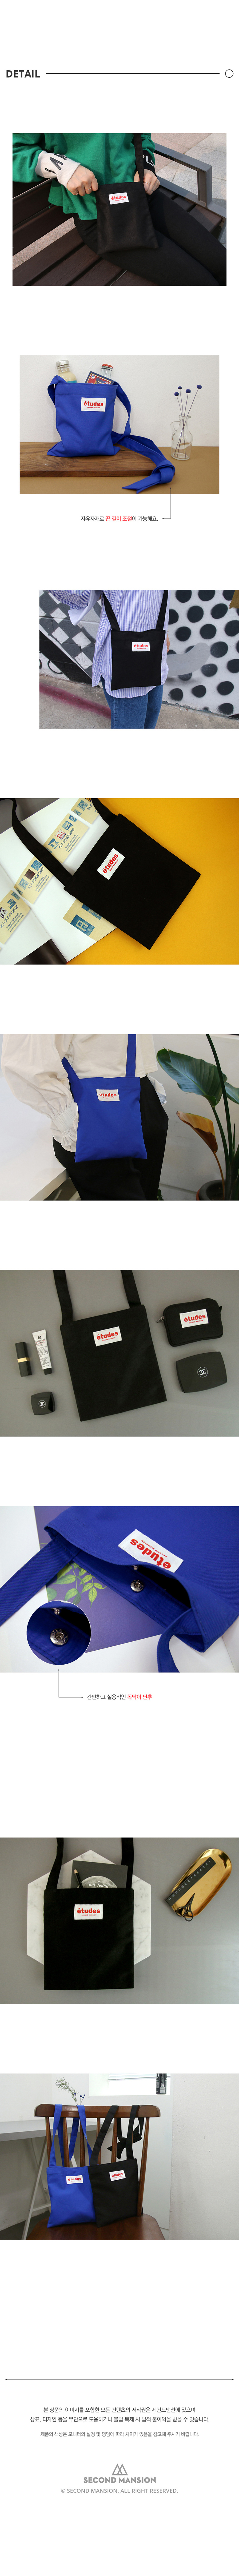 etudes PASSPORT BAG 18,500원 - 세컨드맨션 패션잡화, 가방, 크로스백, 패브릭 바보사랑 etudes PASSPORT BAG 18,500원 - 세컨드맨션 패션잡화, 가방, 크로스백, 패브릭 바보사랑